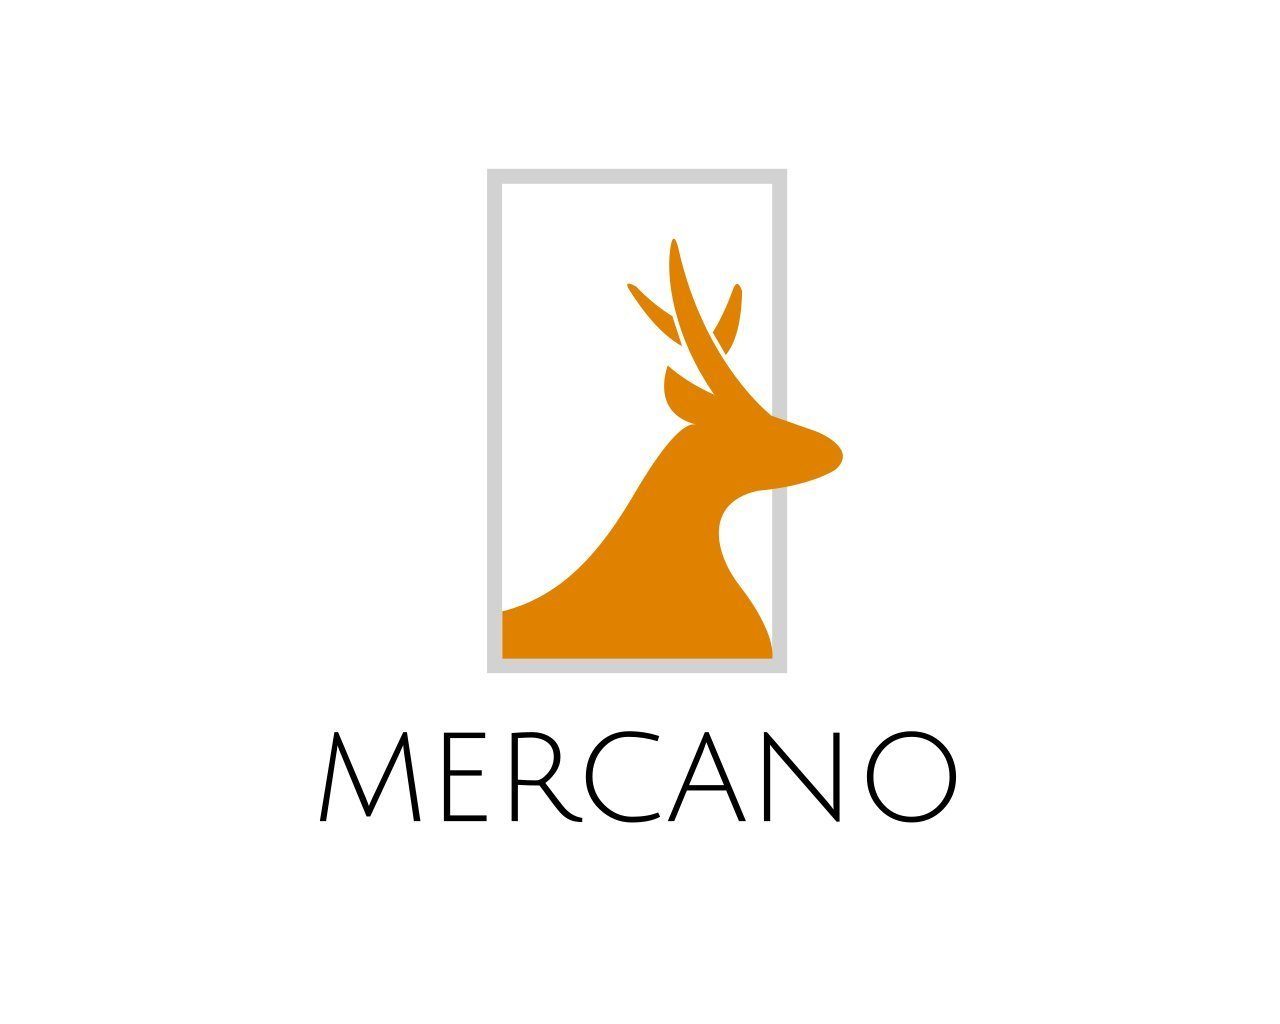 für RFID-Schutz & aus mit inkl. Leder Doppelnaht, Herren, Vintage Geschenkbox Geldbörse Braun 100% Mercano